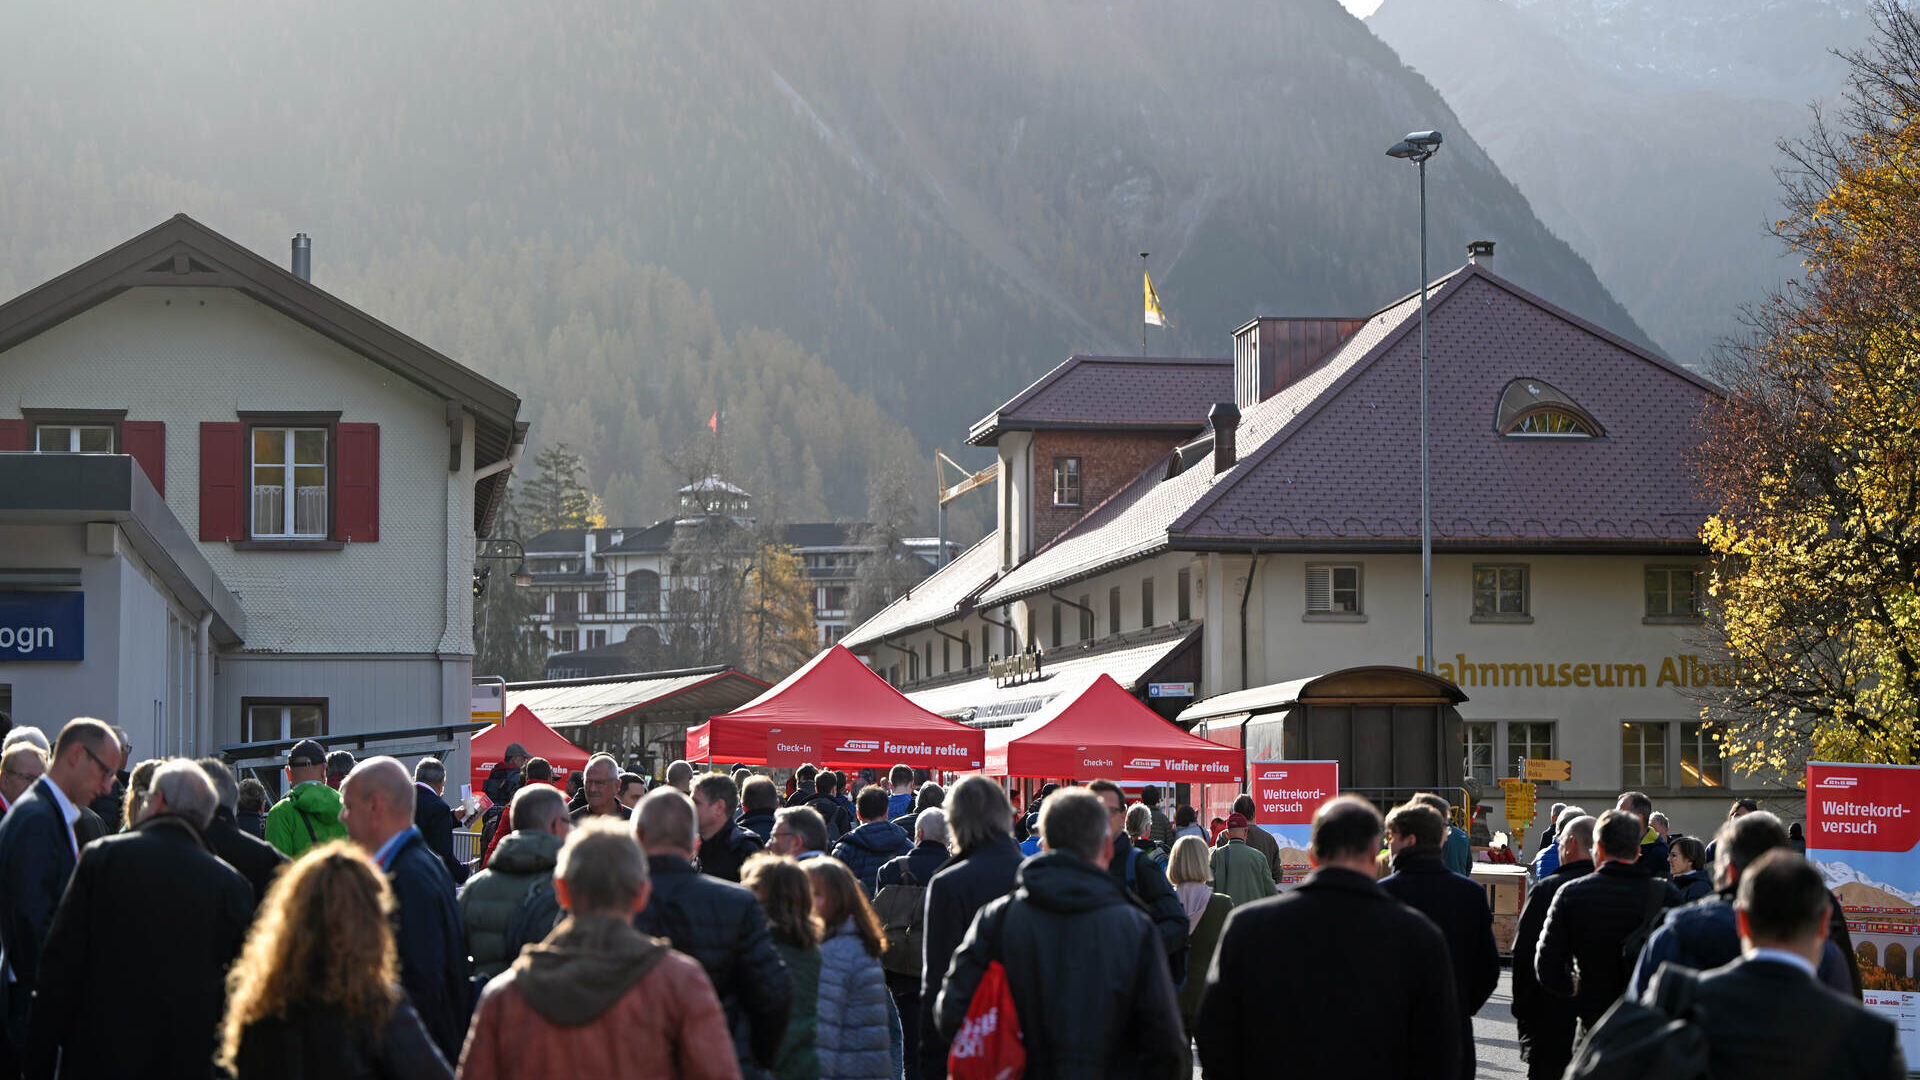 Aktivitātes Graubindenes publikai Reetijas dzelzceļa pasaulē garākā šaursliežu vilciena rekorda laikā